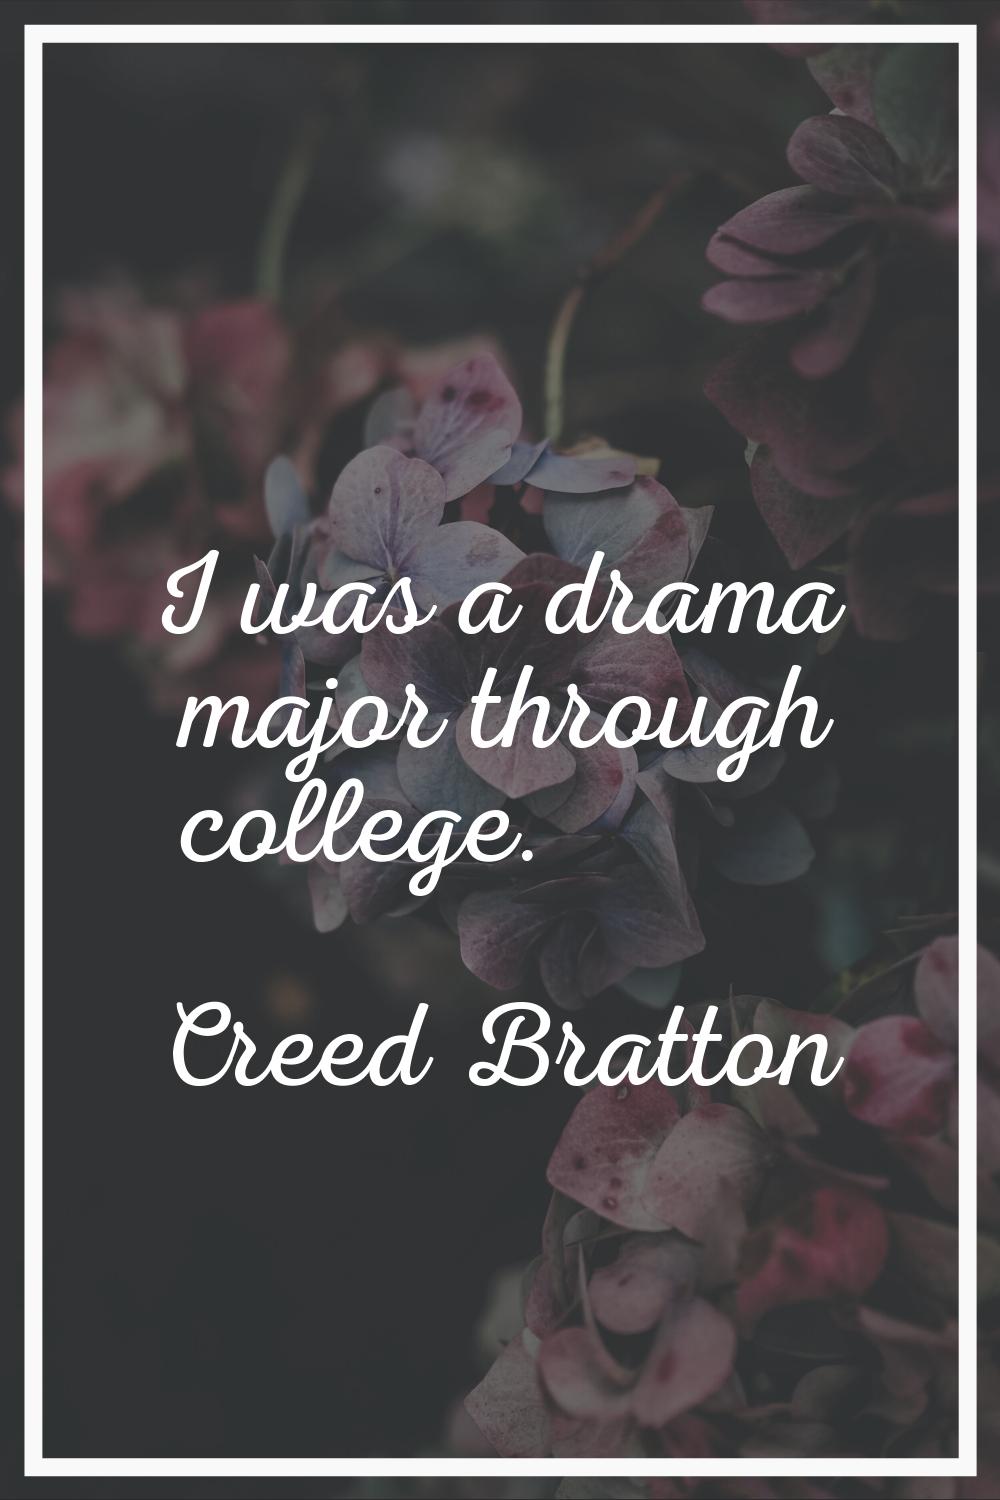 I was a drama major through college.